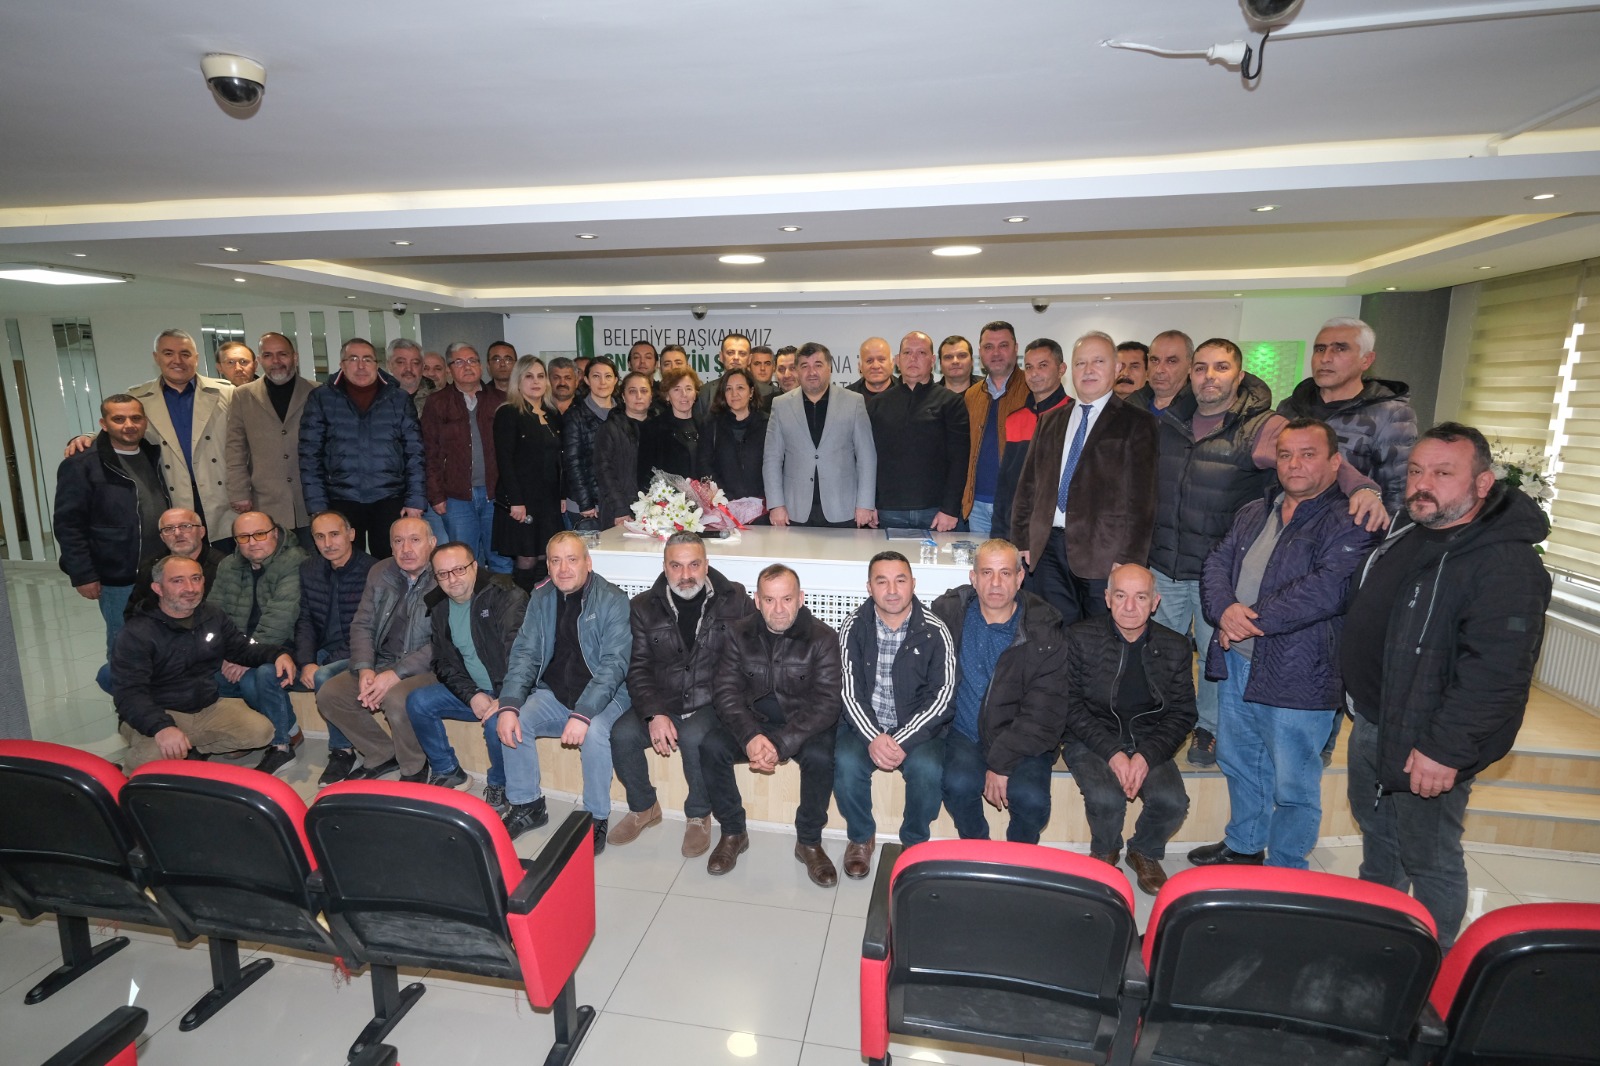 Giresun Belediyesi Kadrolu İşçilerle Toplu İş Sözleşmesi İmzaladı